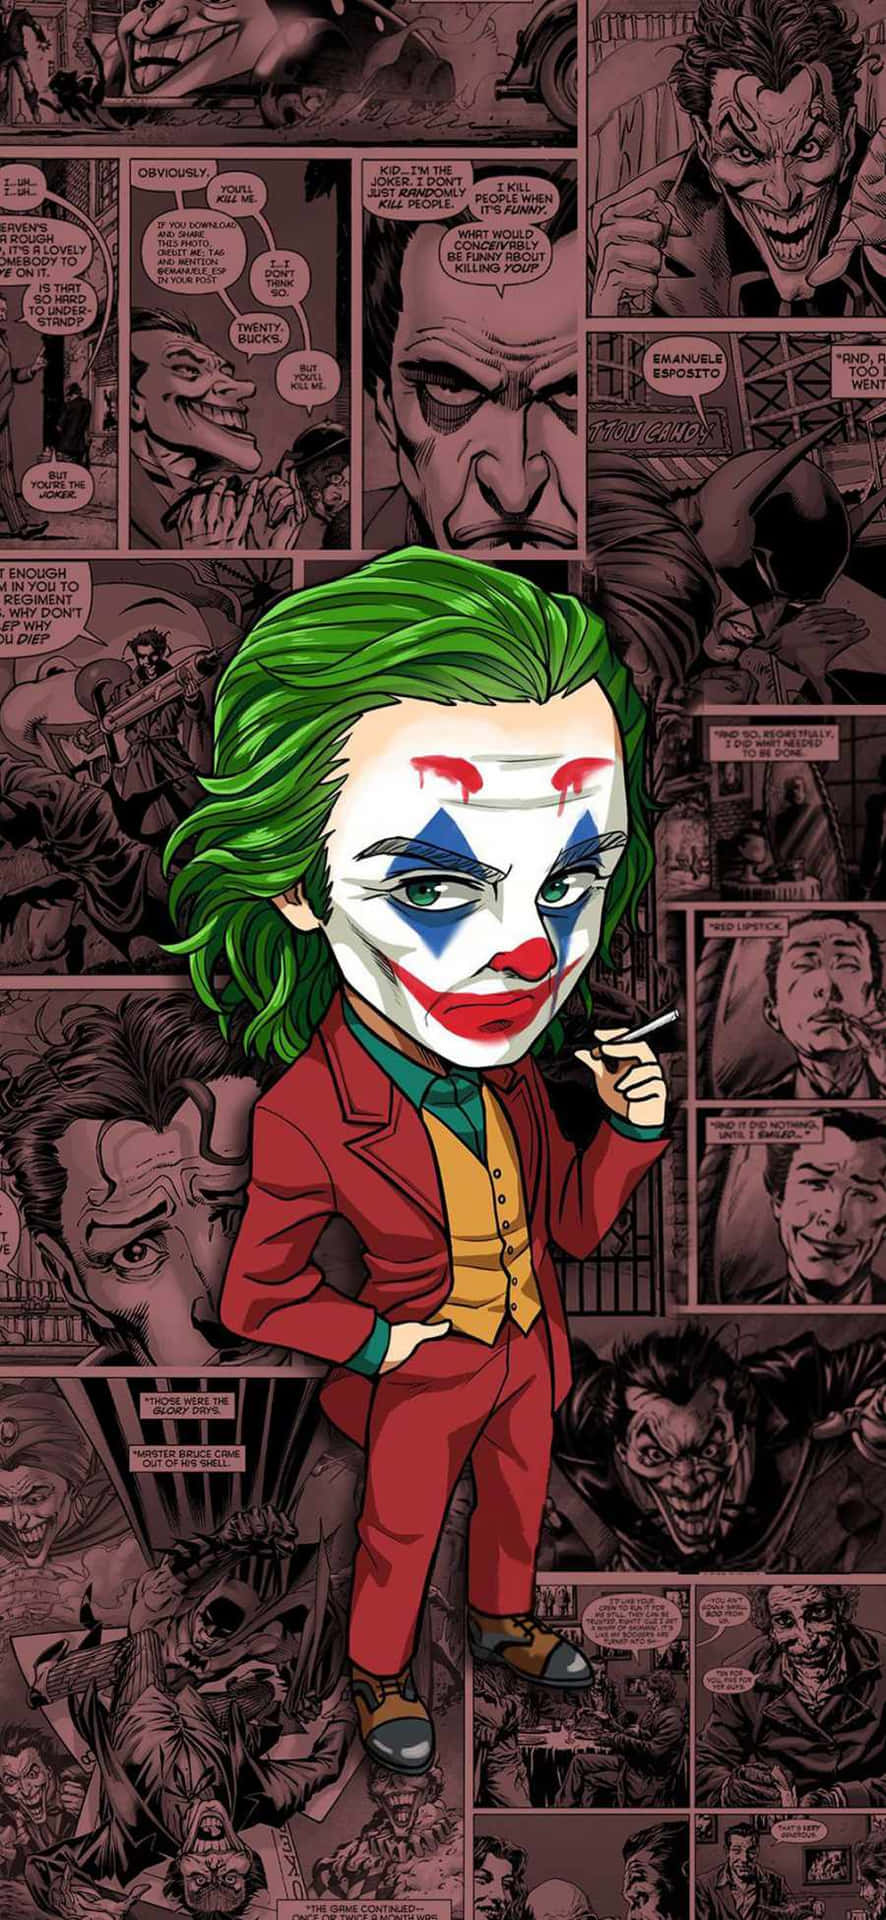 Følg latter fra Jokeren, og det vil føre dig på en eventyr af uforudsigelighed og liv. Wallpaper